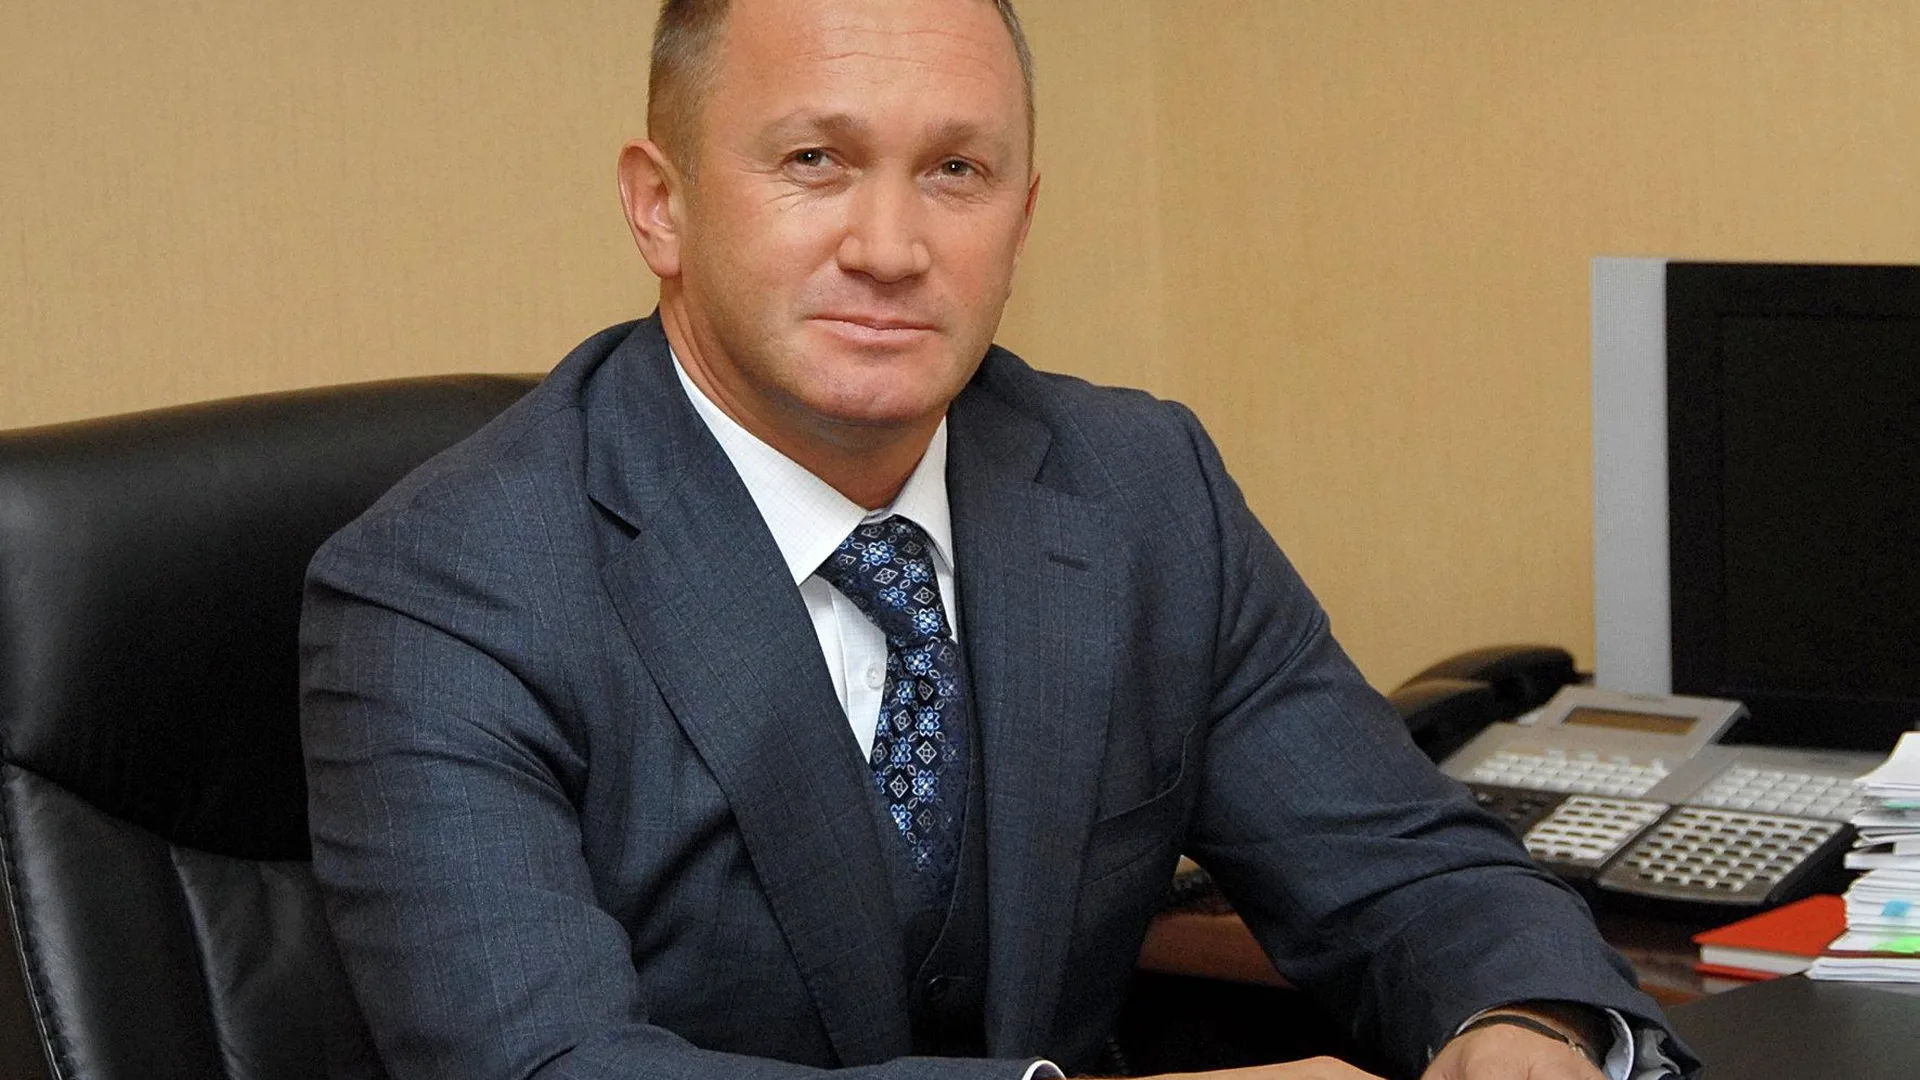 Мособлдума рассмотрит кандидатуру Елянюшкина на пост вице-премьера 24 января